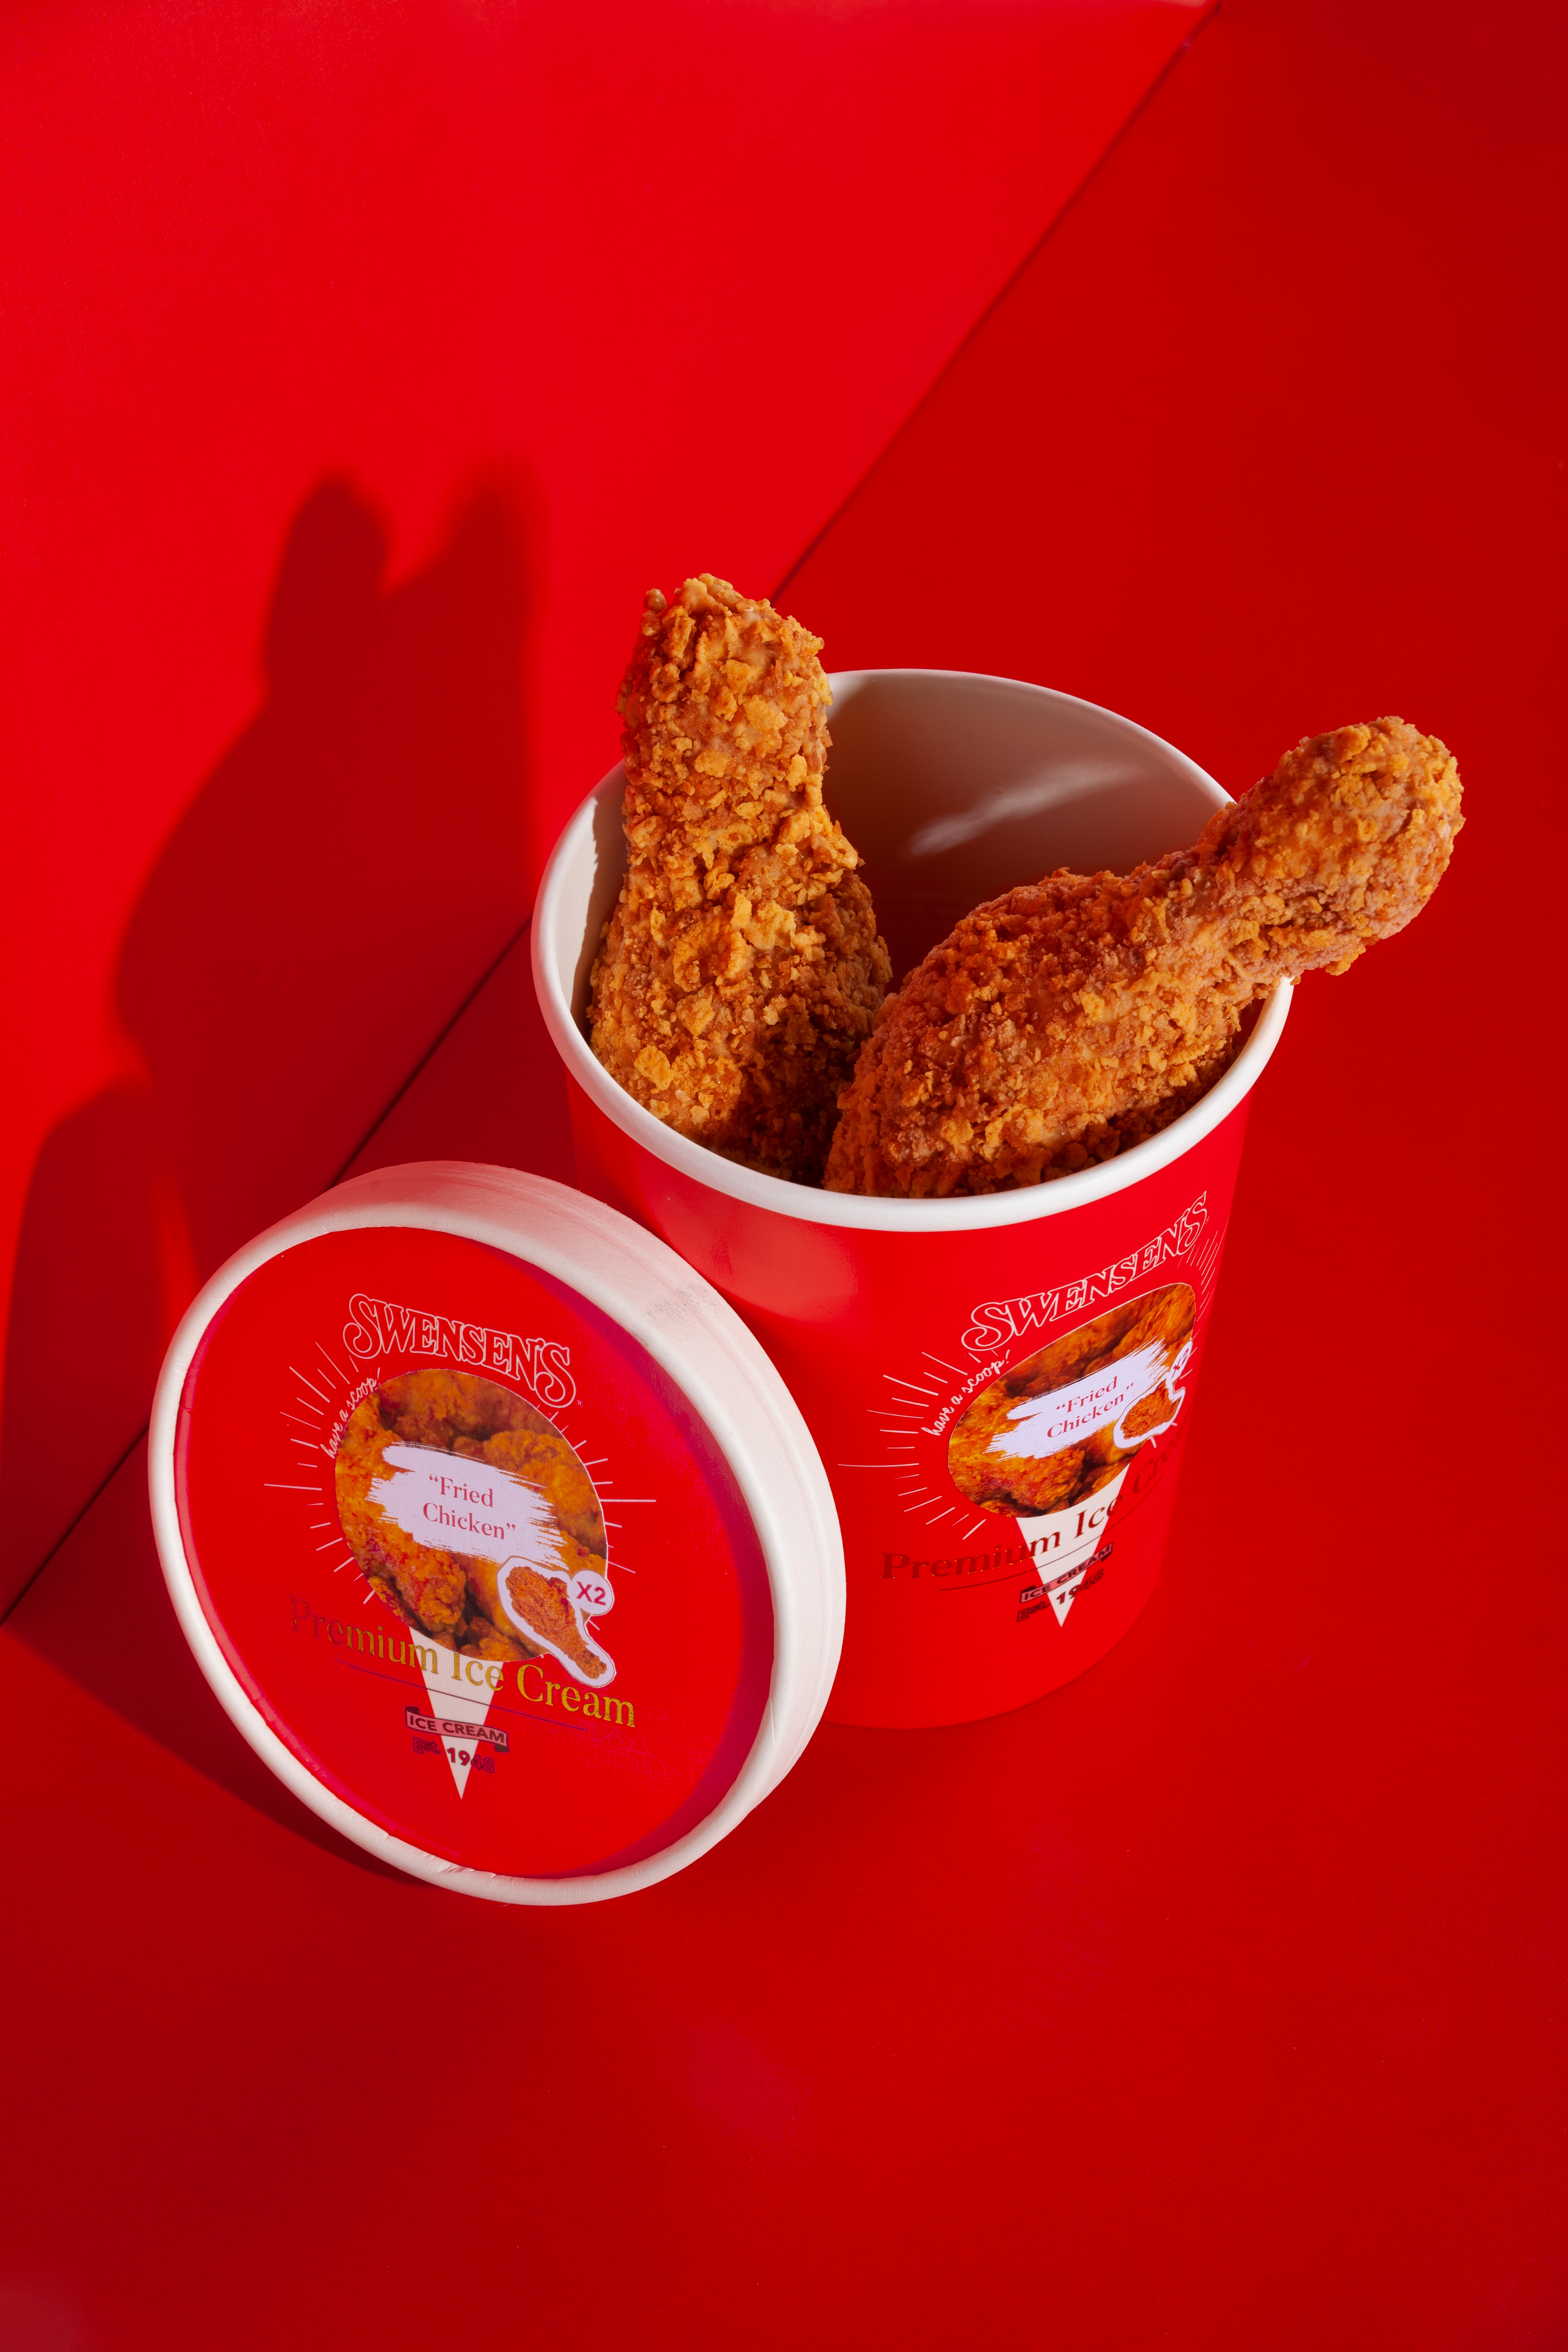 Swensen_s-_Fried-Chicken_-Ice-Cream-Pint-2.jpg